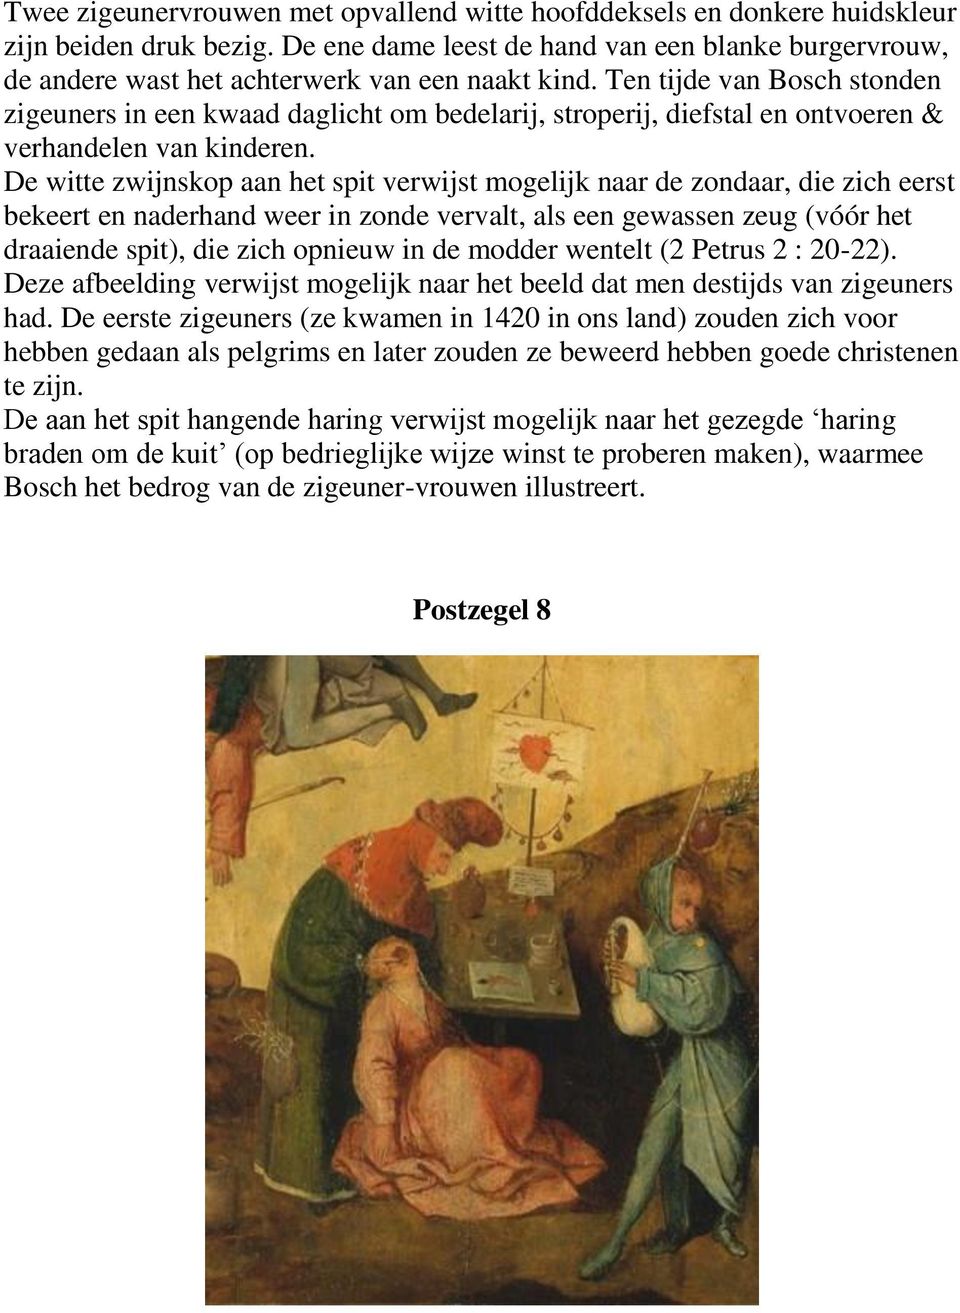 Ten tijde van Bosch stonden zigeuners in een kwaad daglicht om bedelarij, stroperij, diefstal en ontvoeren & verhandelen van kinderen.